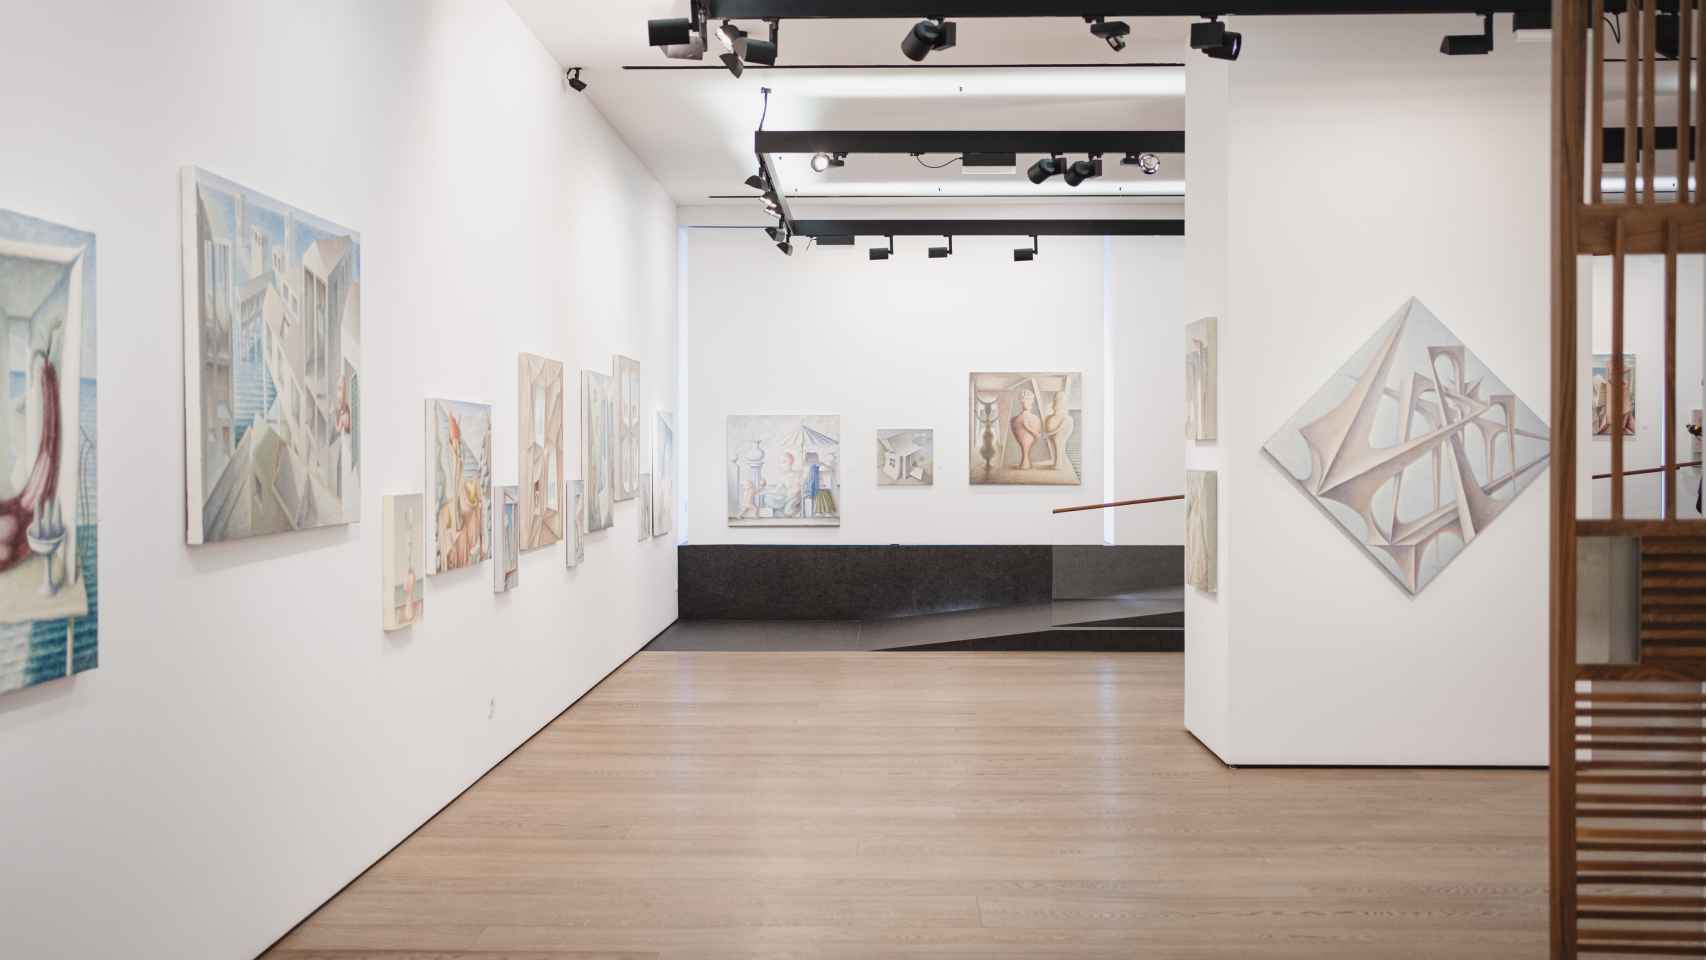 Vista de la exposición de Pérez Villalta en la galería Fernández-Braso